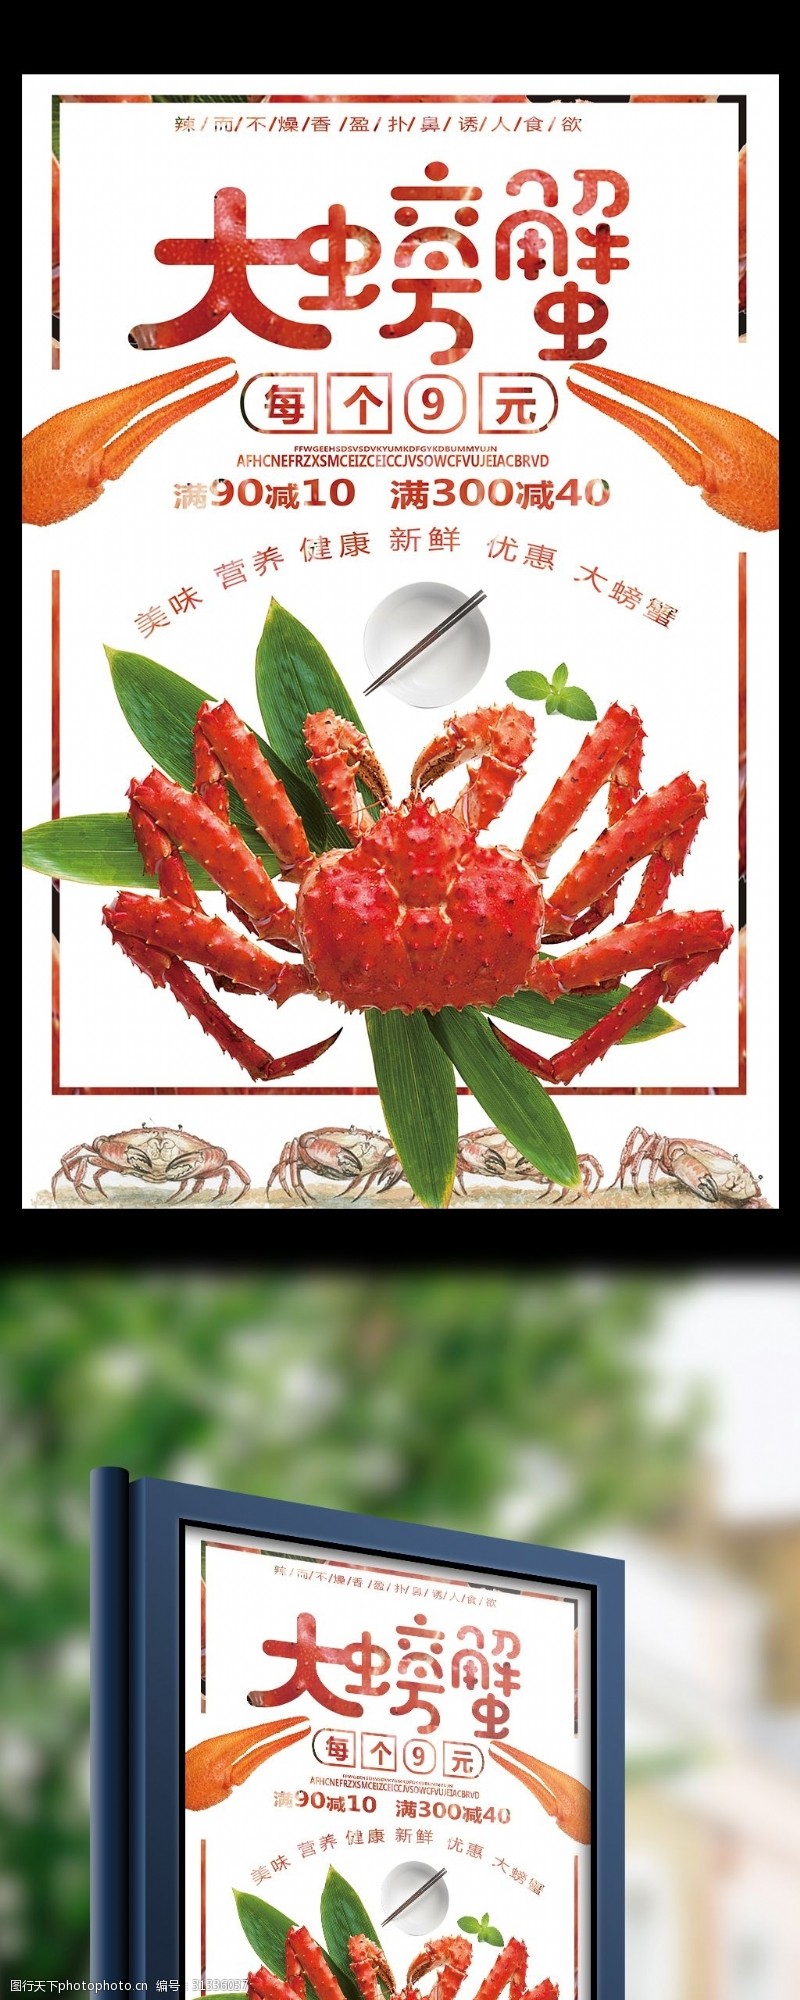 中华美食海报大螃蟹海鲜美食促销海报